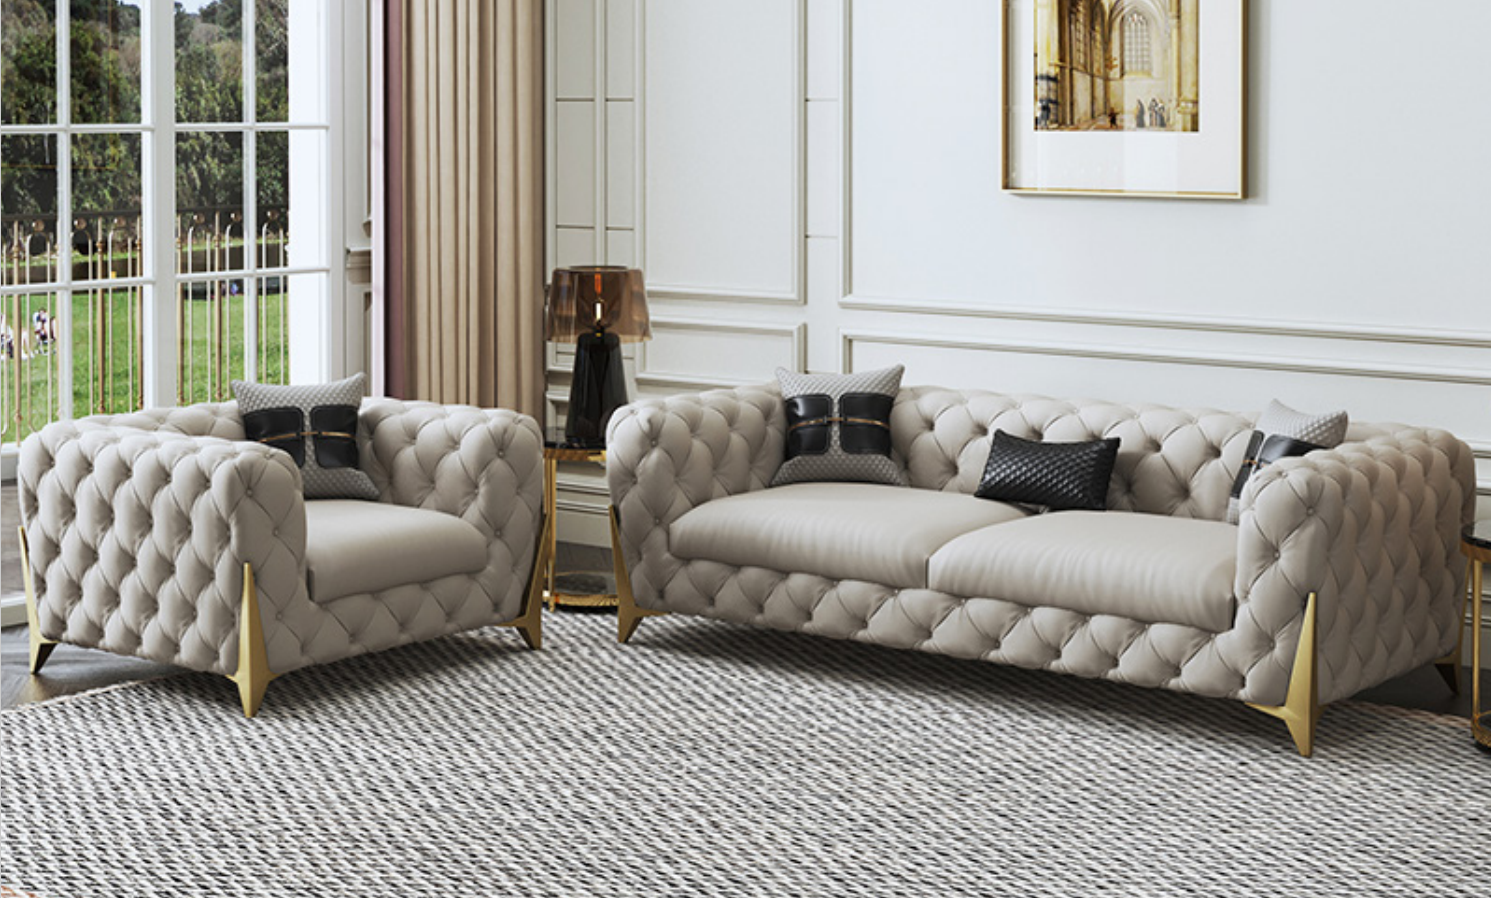 Sofagarnitur Big Set 3+1 Sitzer Leder Sofa Couch Garnitur Design Couchen